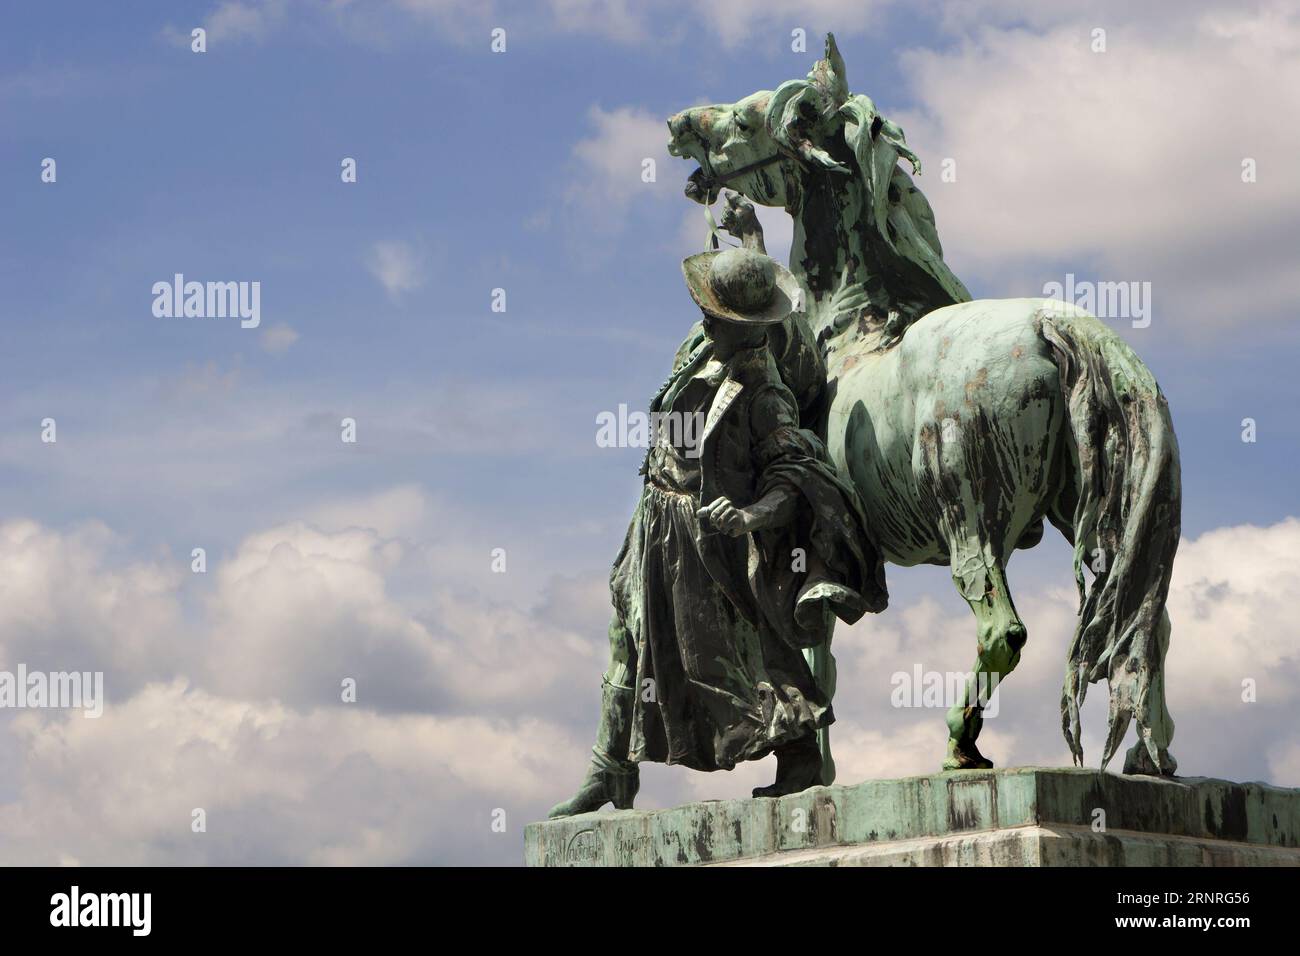 Cheval Wrangler - la statue de l'Hortobagy ostler - Csikos dans la cour du château de Buda à Budapest Hongrie par György Vastagh Banque D'Images